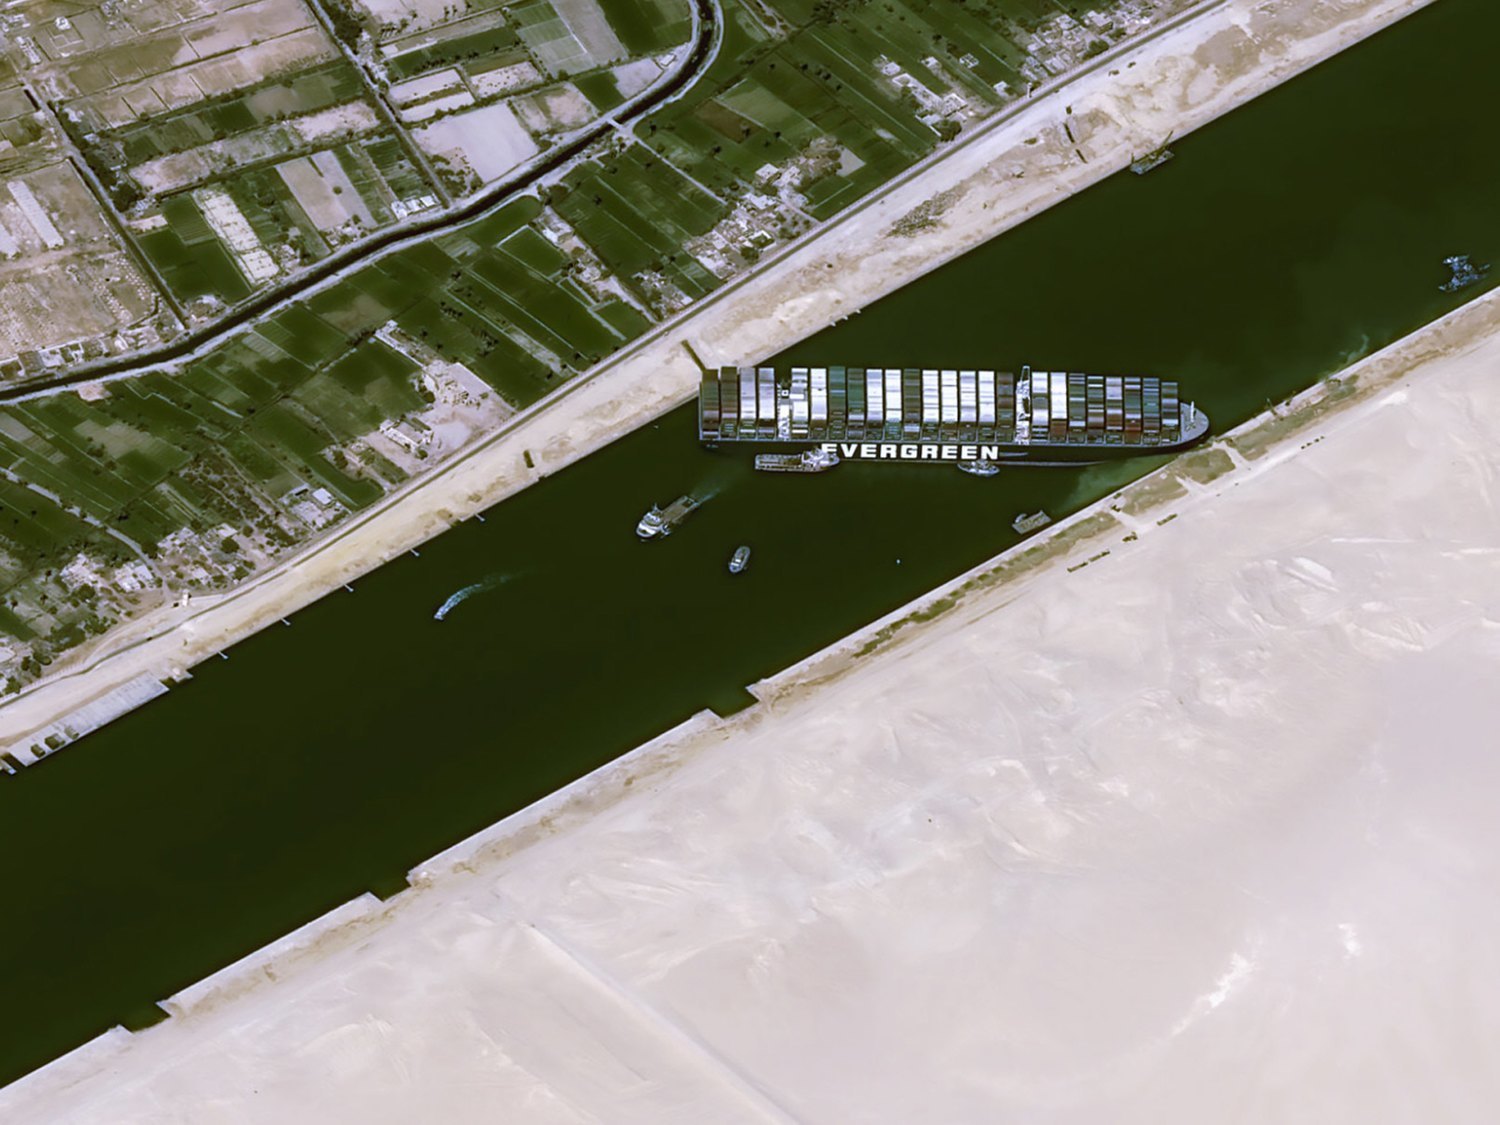 Reflotan parcialmente el Ever Given, ebuque que llevaba una semana encallado en el Canal de Suez